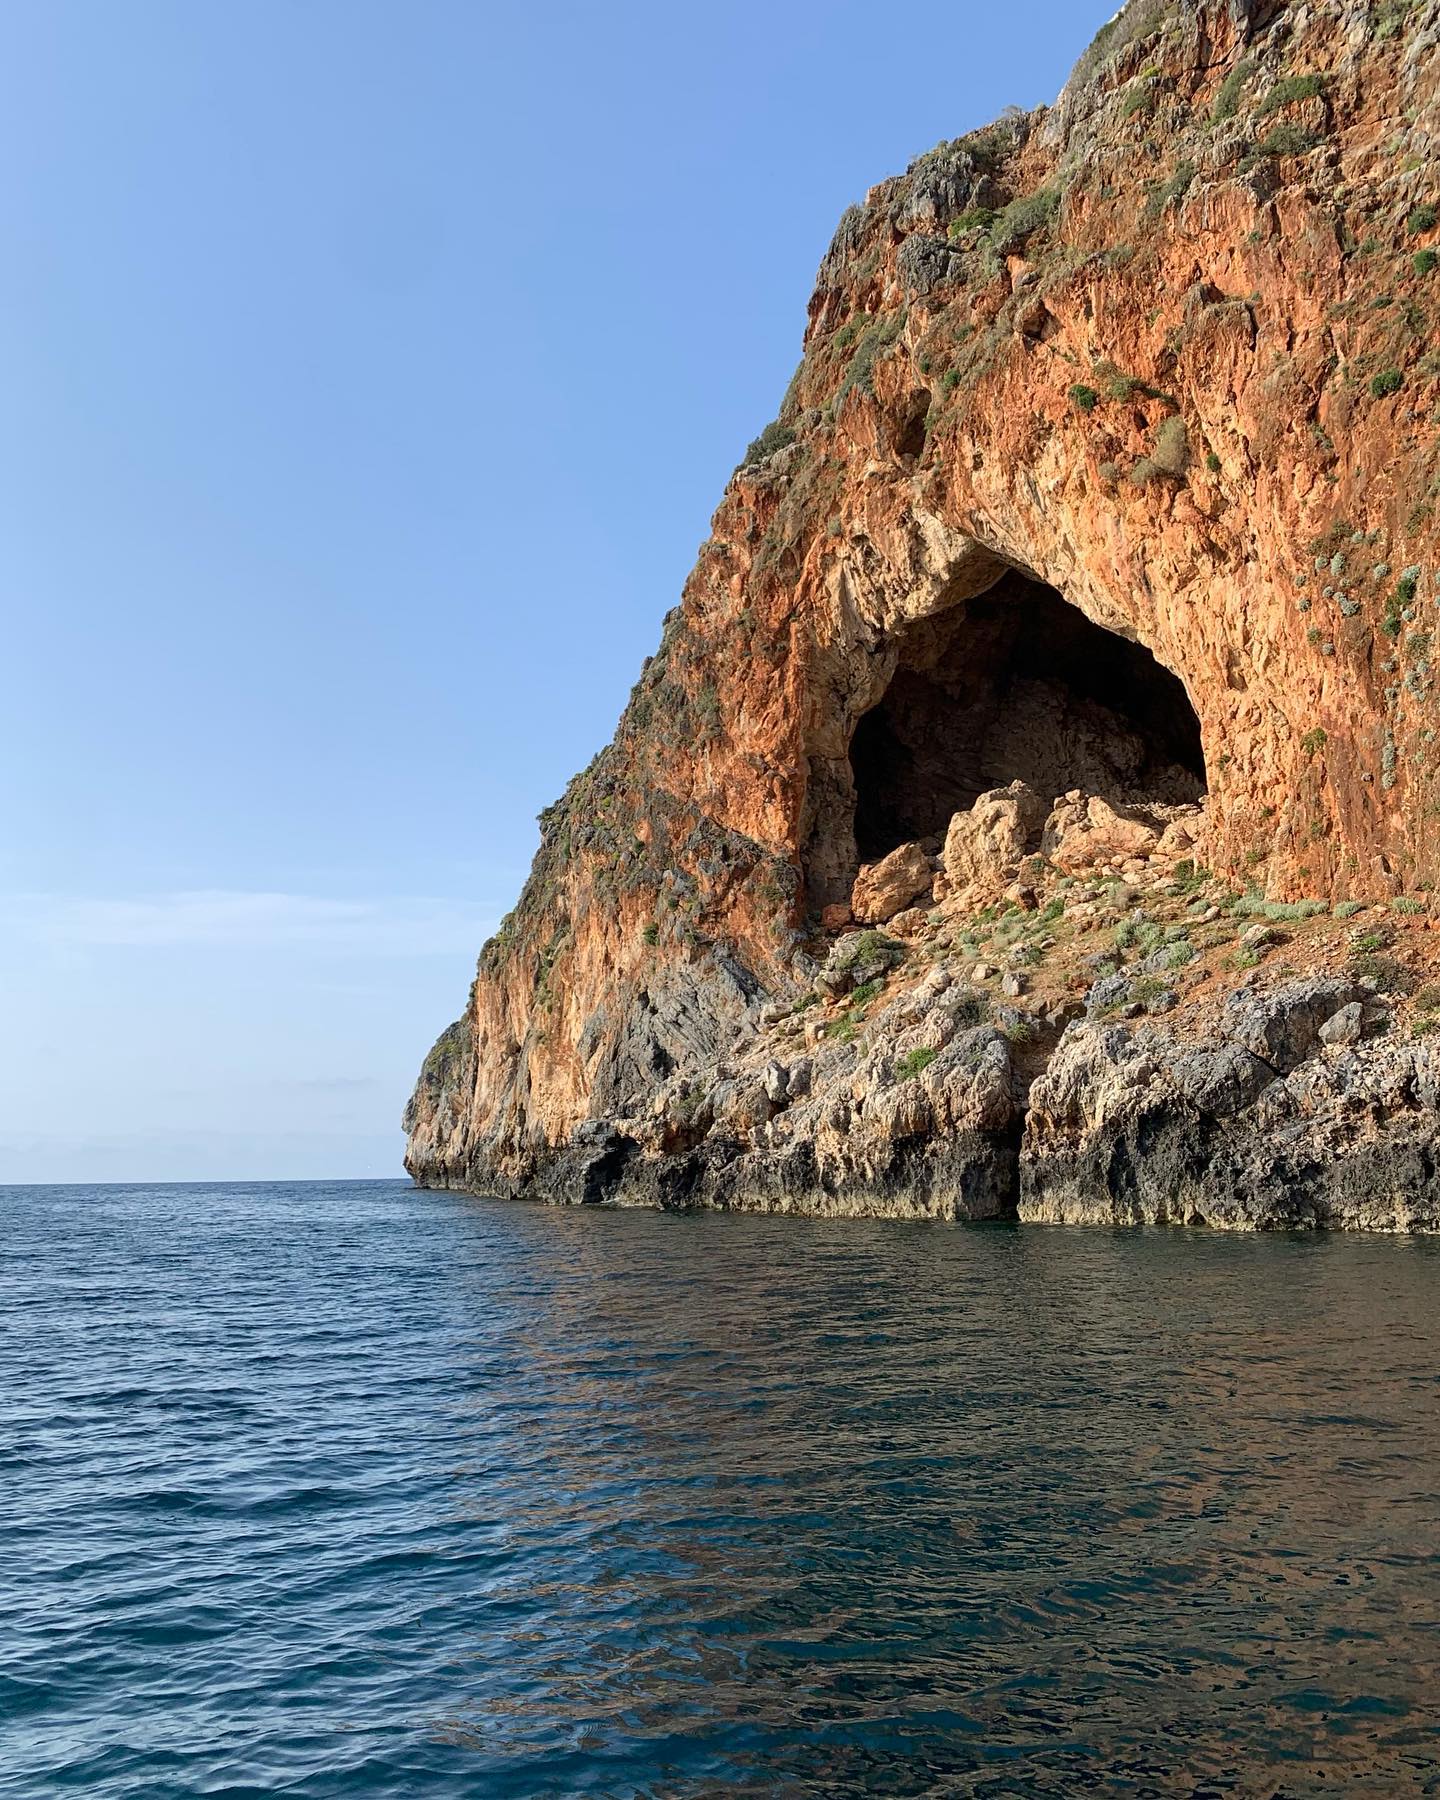 Explore Crete’s North Coast on a Boat